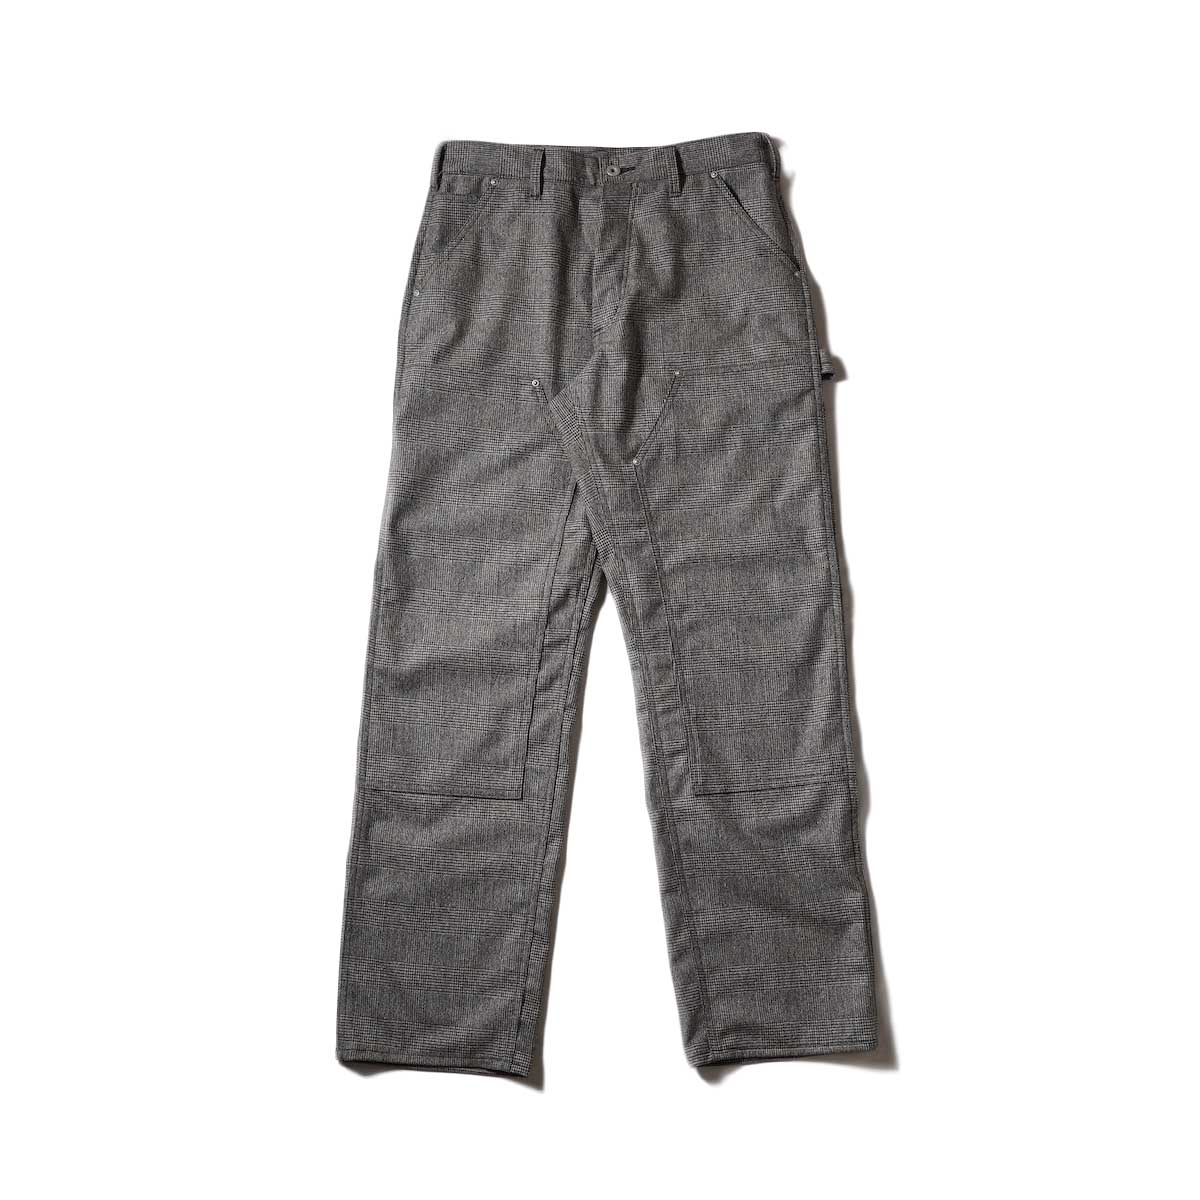 Willow Willow Pants / P-013 Car Pants (Glen Check) / P-001 - Stripe-Wool Pants (Charcoal)